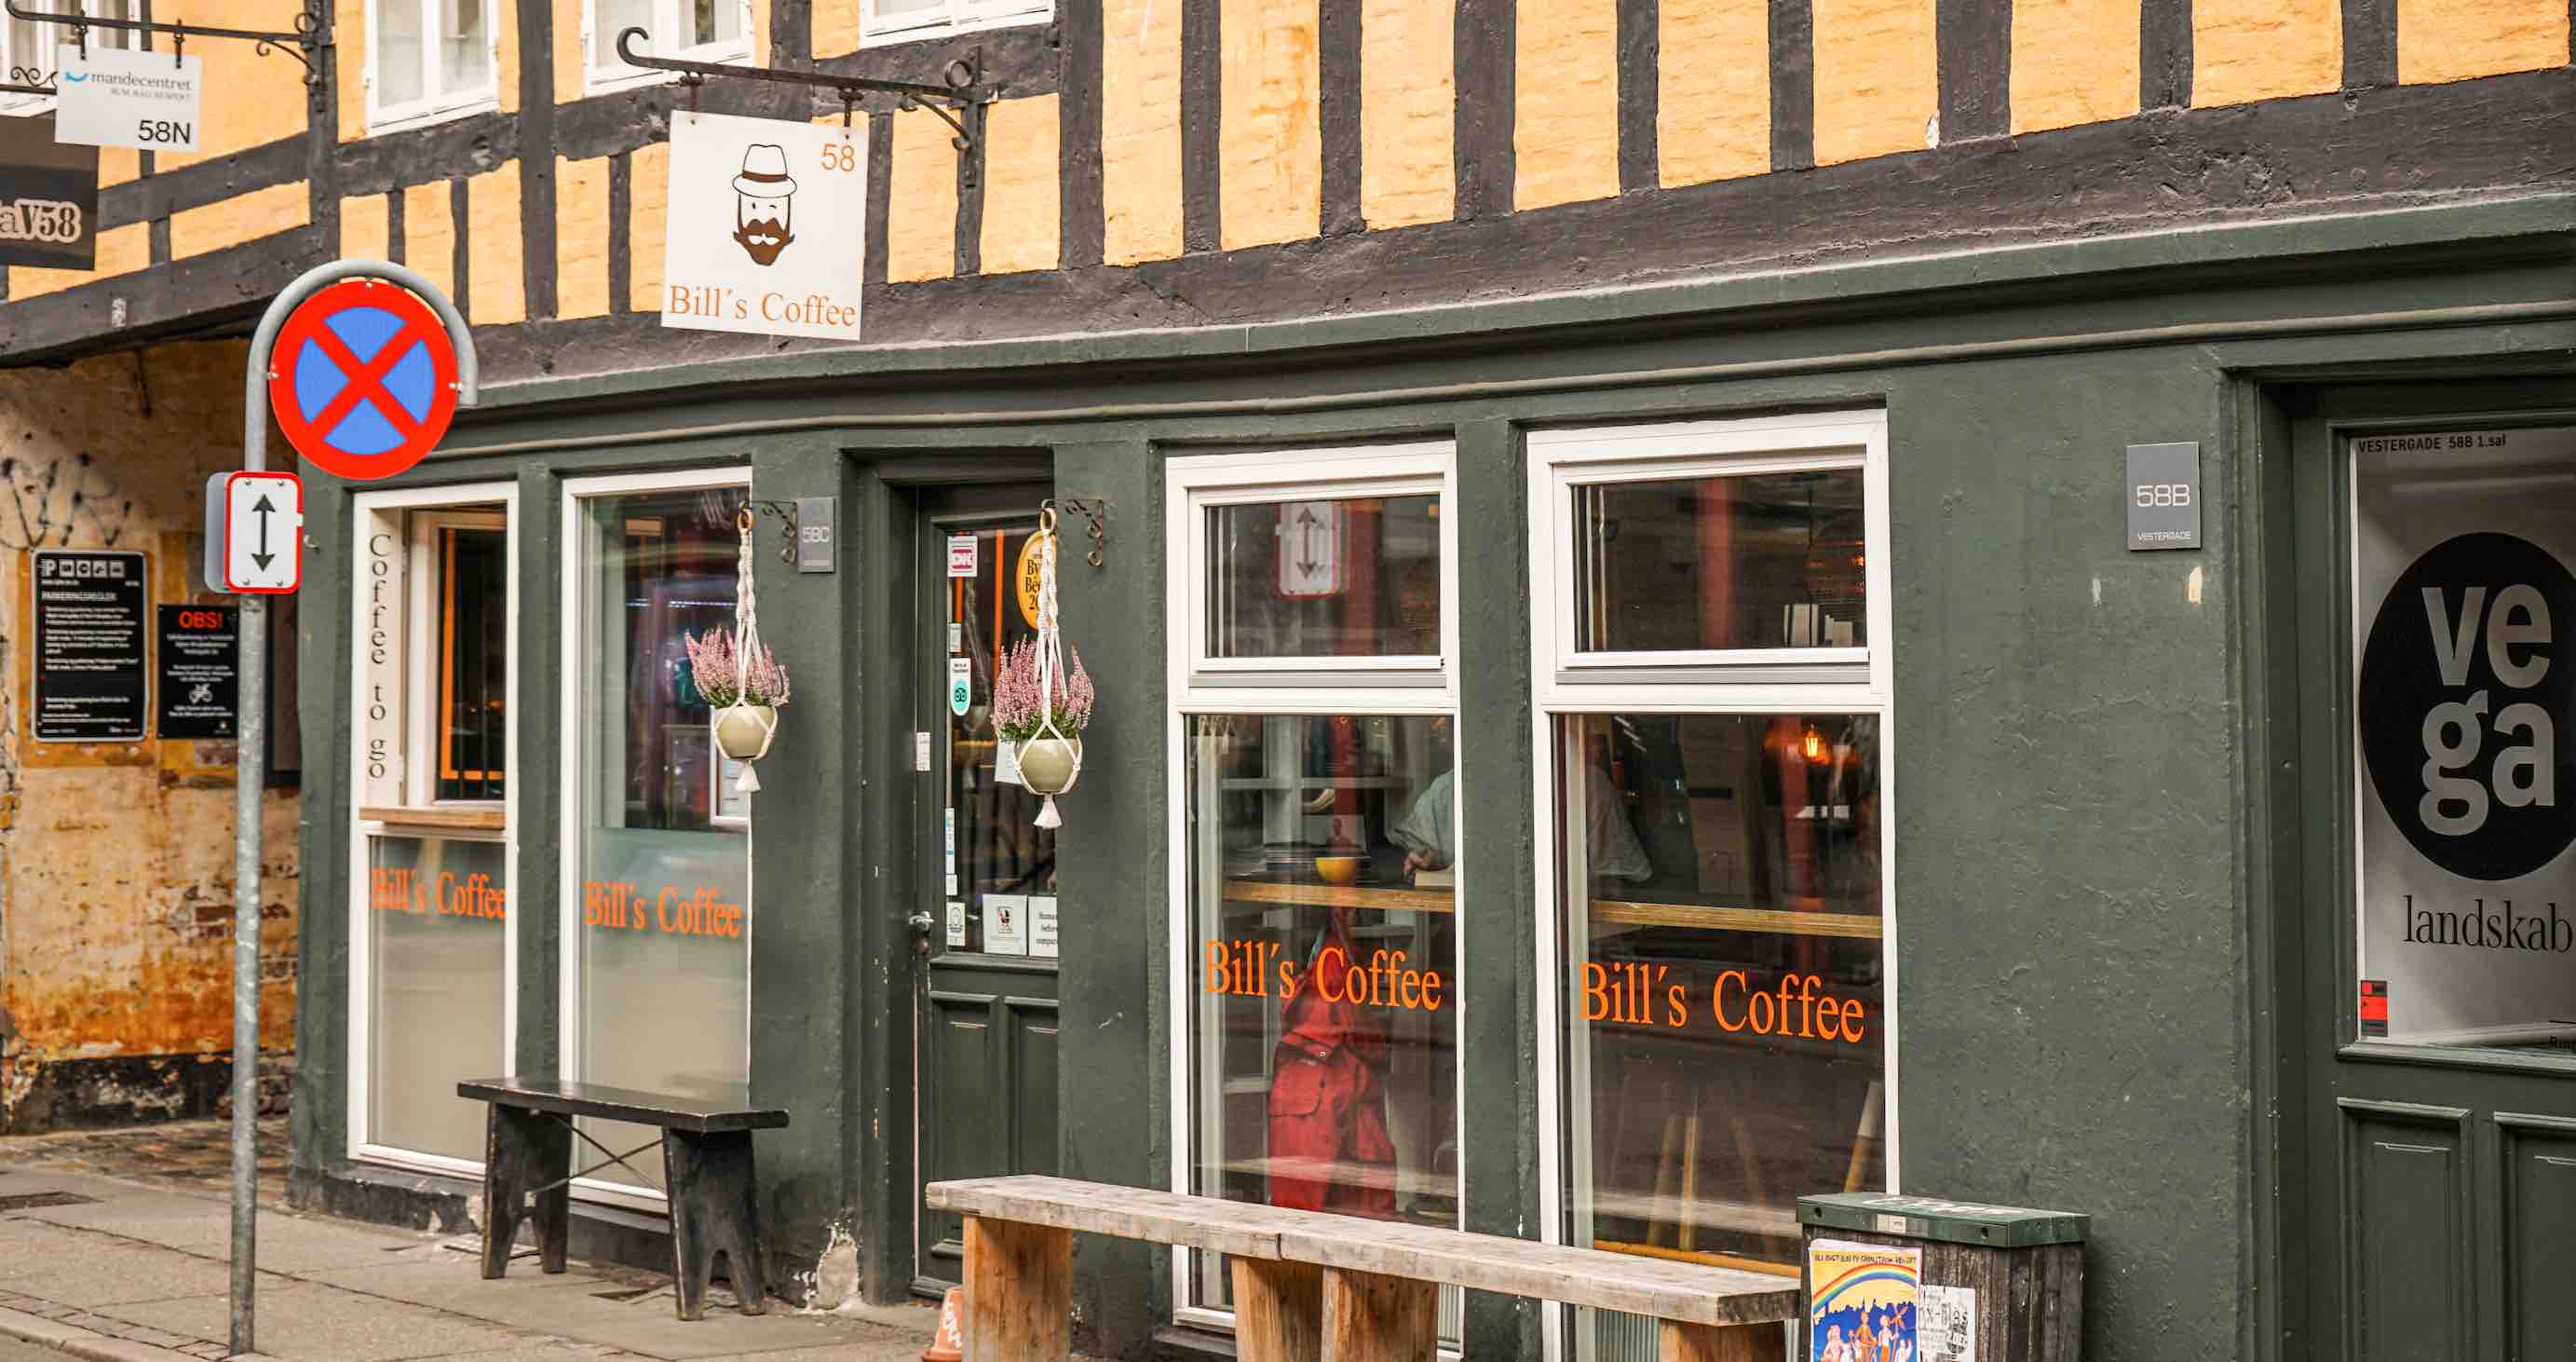 Kaffeguide Aarhus - Bill's Coffee